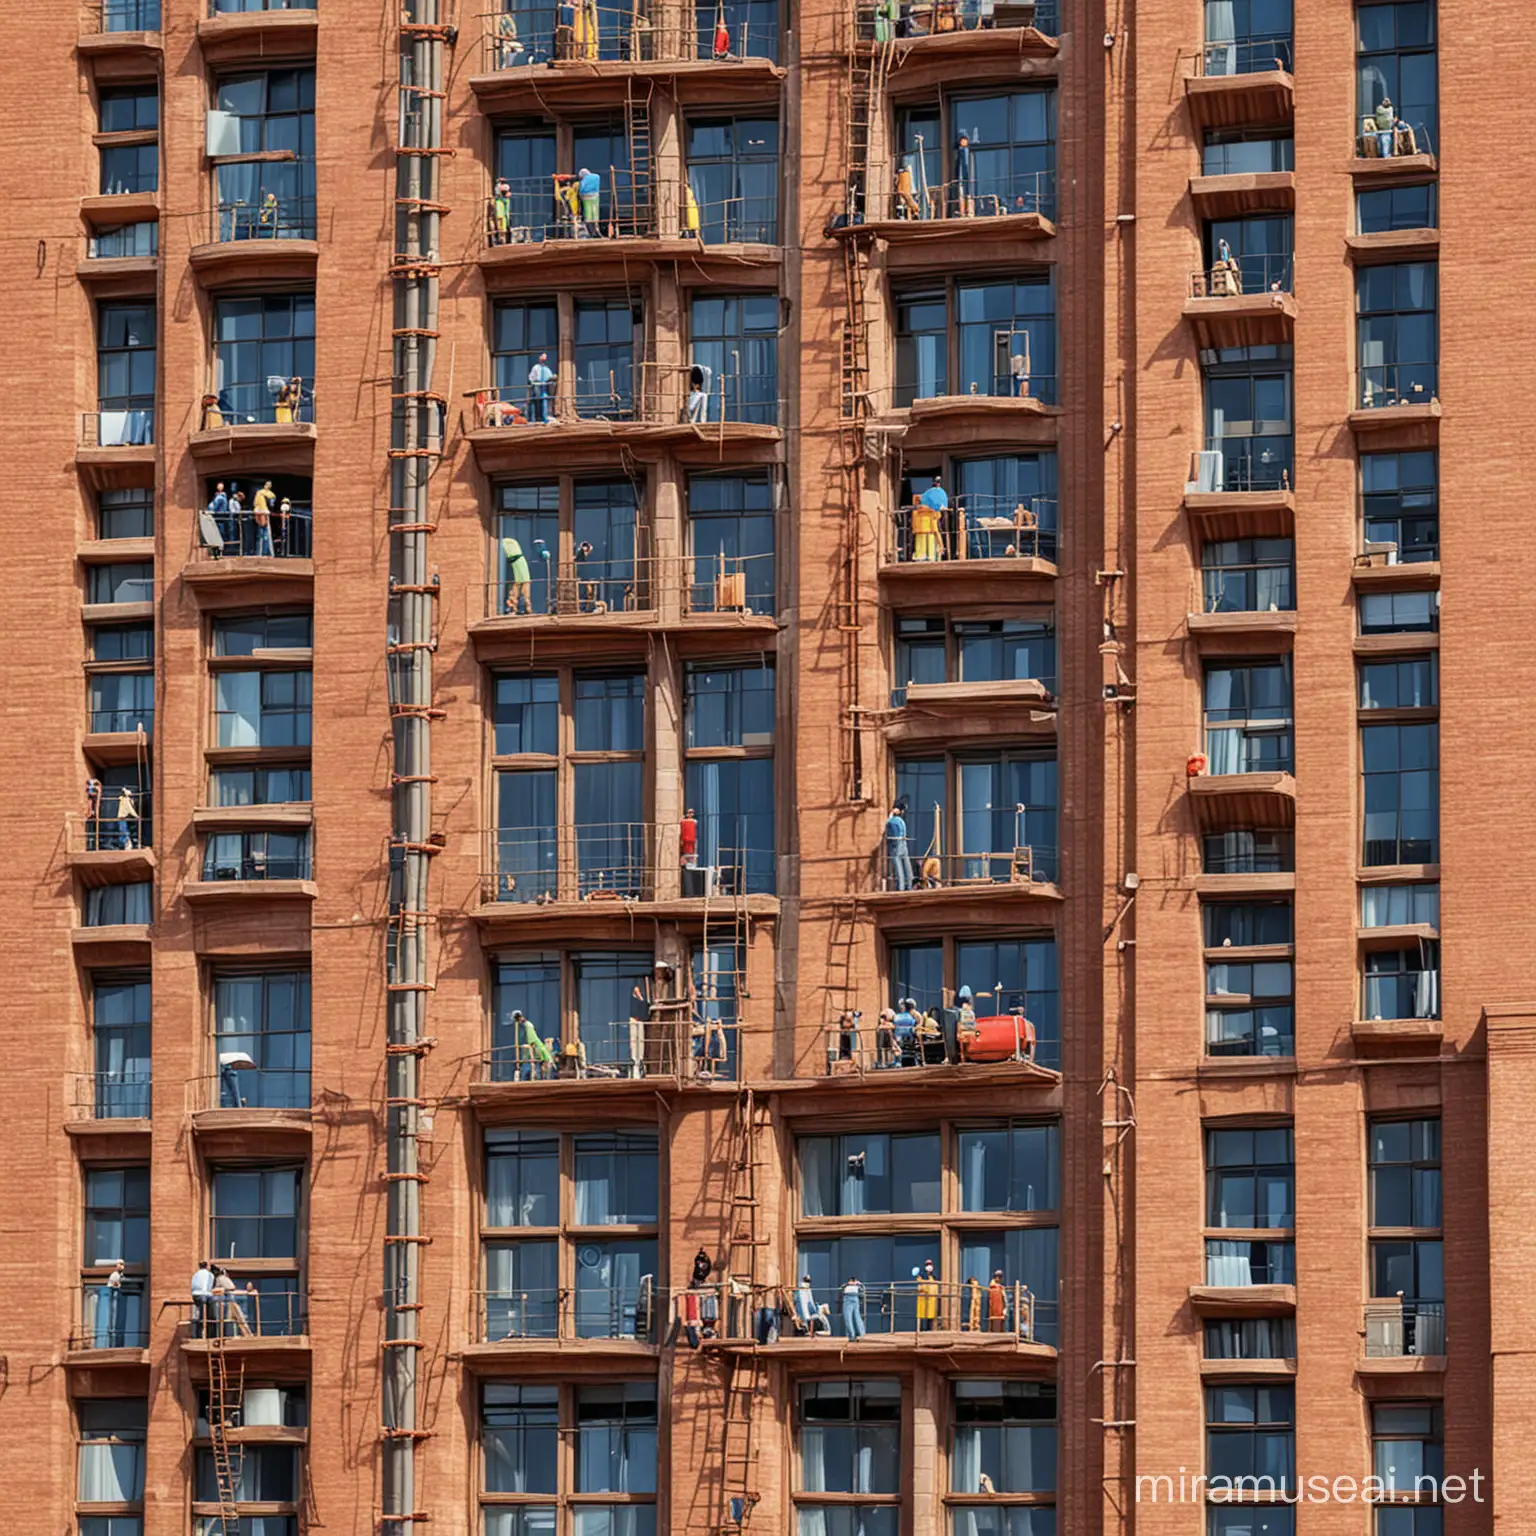 personas construyendo un edificio se ven de cerca como pixar

